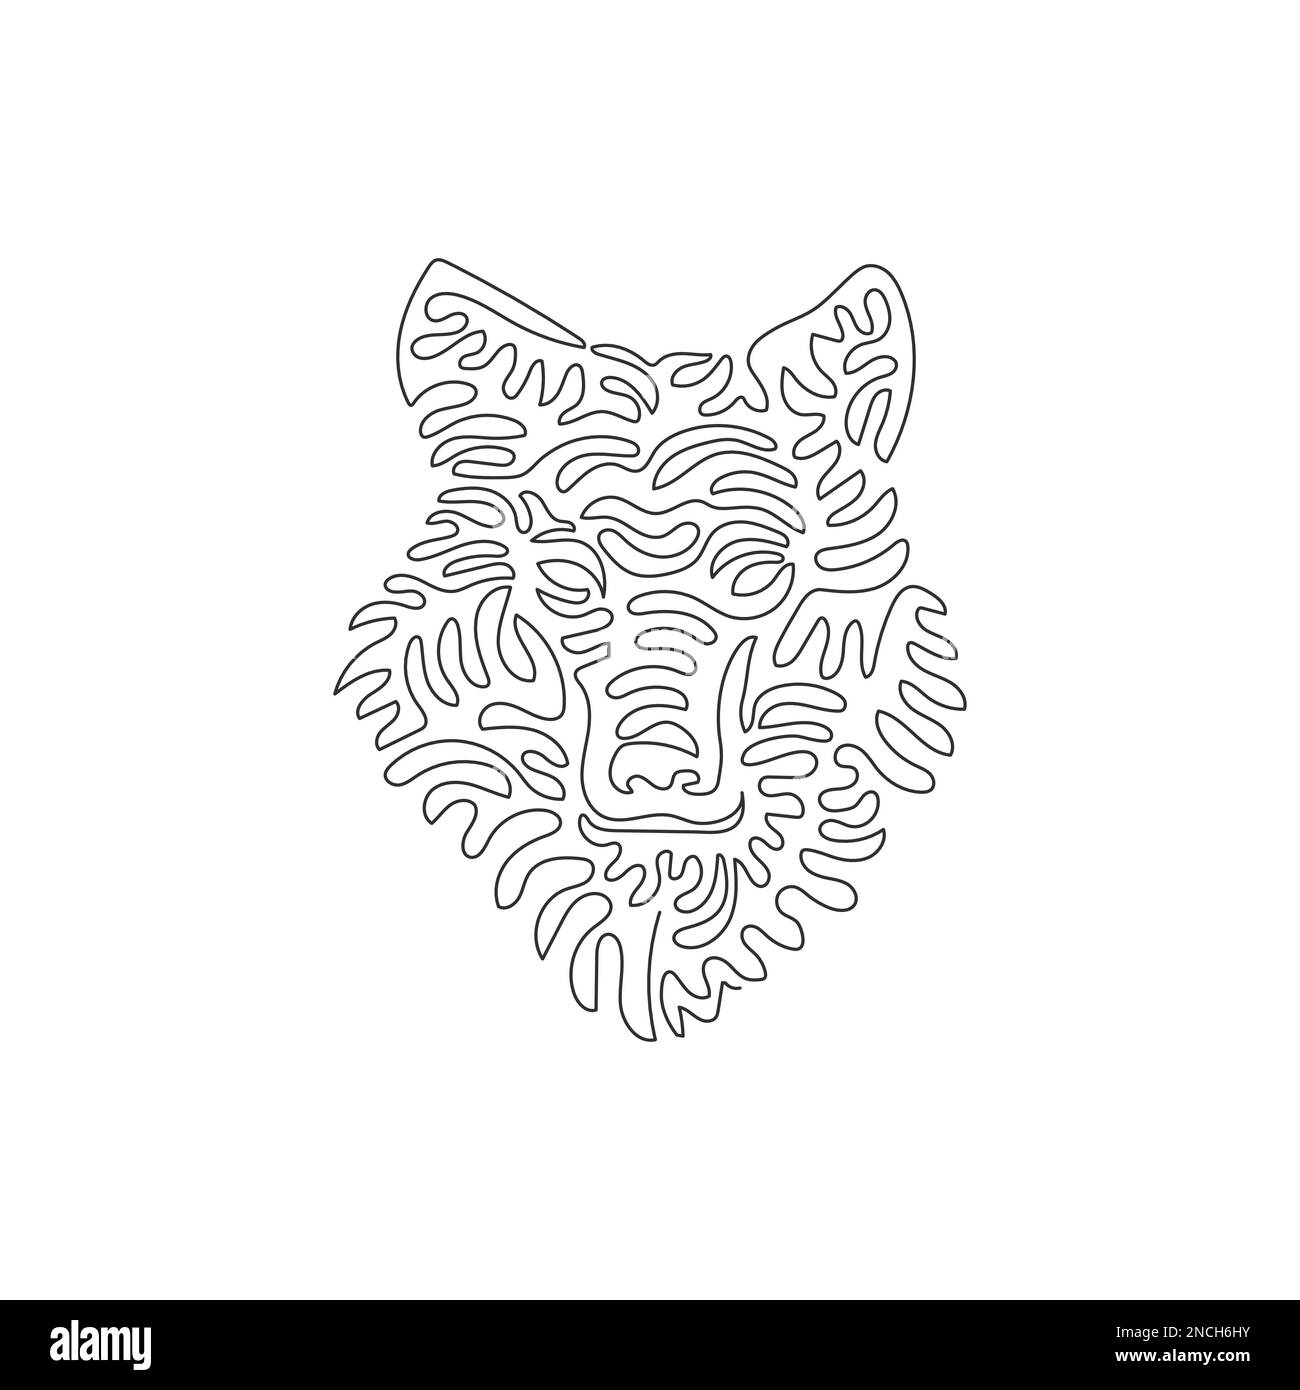 Dessin d'une seule ligne de courbure de l'art abstrait du loup prédateur Dessin en ligne continue dessin graphique dessin vectoriel illustration d'un loup est un canin sauvage Illustration de Vecteur